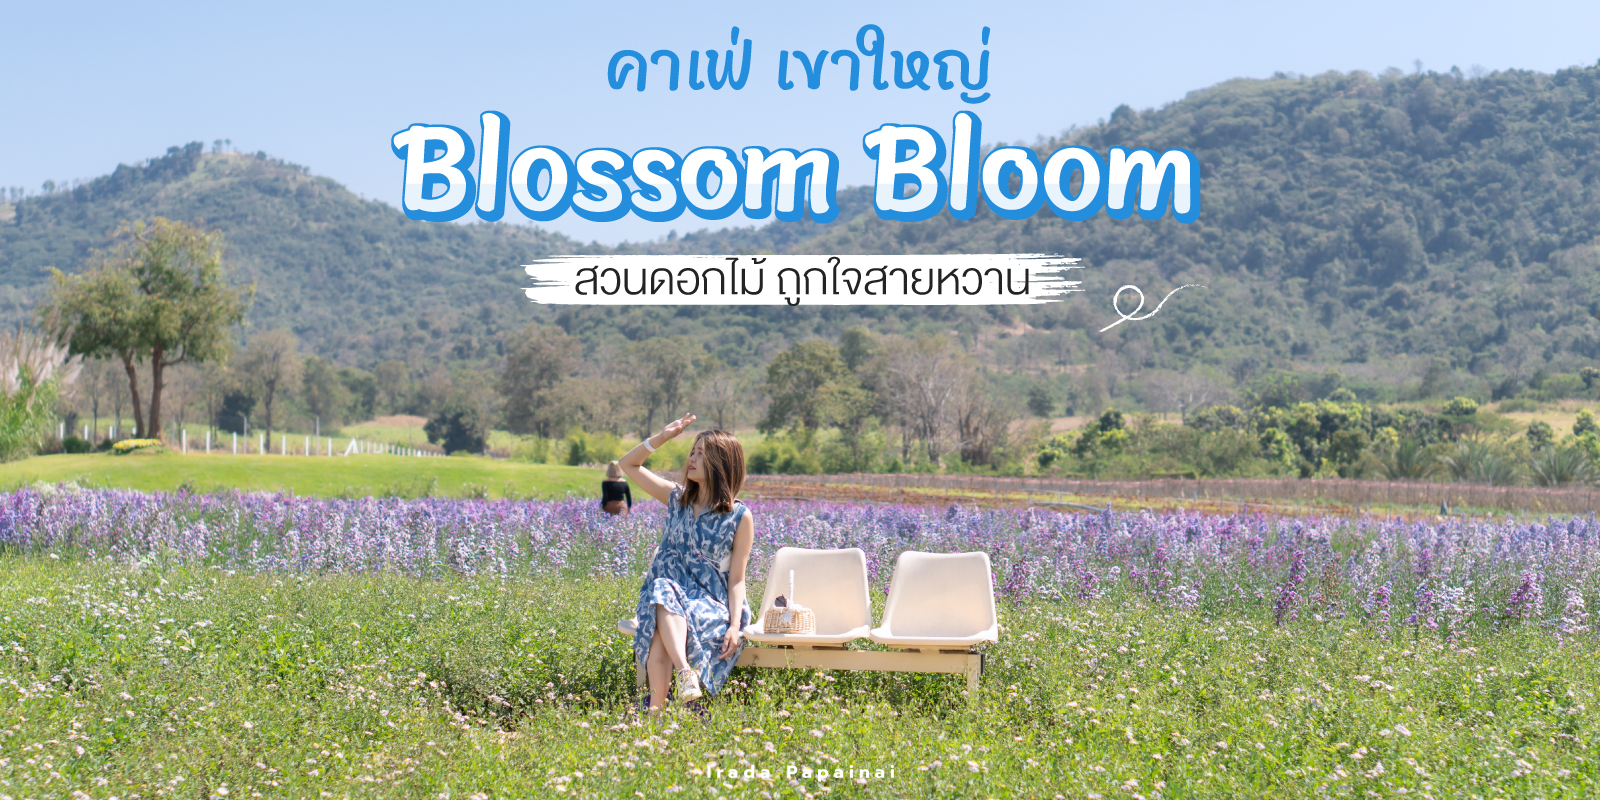 คาเฟ่เขาใหญ่เปิดใหม่ Blossom Bloom คาเฟ่สวนดอกไม้ ถ่ายรูปสวย ถูกใจสายหวาน  #มัน